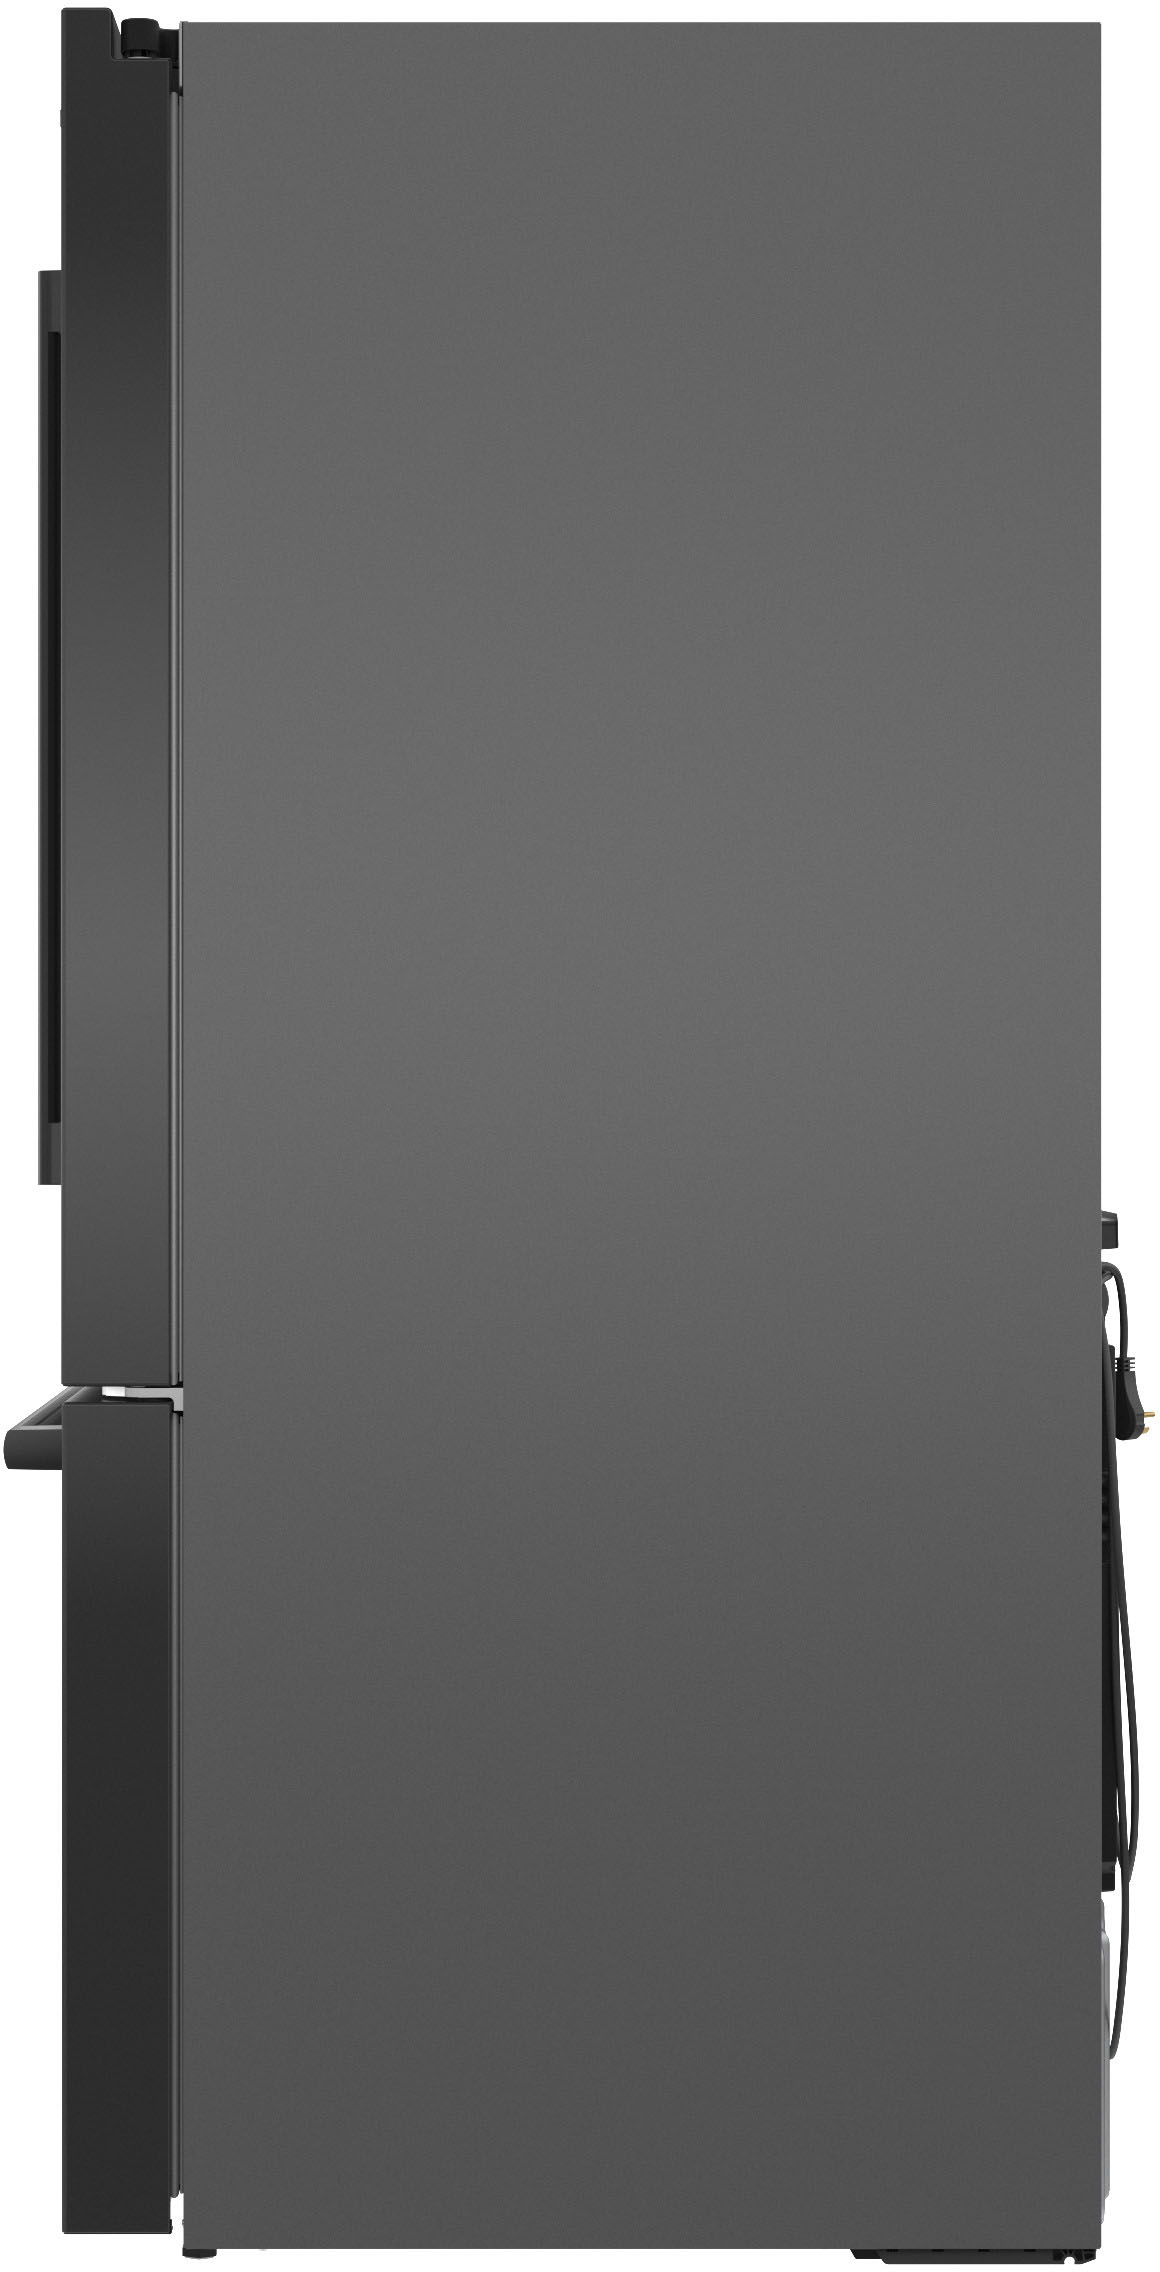 Left View: Bosch - 800 Series 20 Cu. Ft. 4-Door French Door Counter-Depth Smart Refrigerator with Beverage Cooler Drawer - Stainless steel